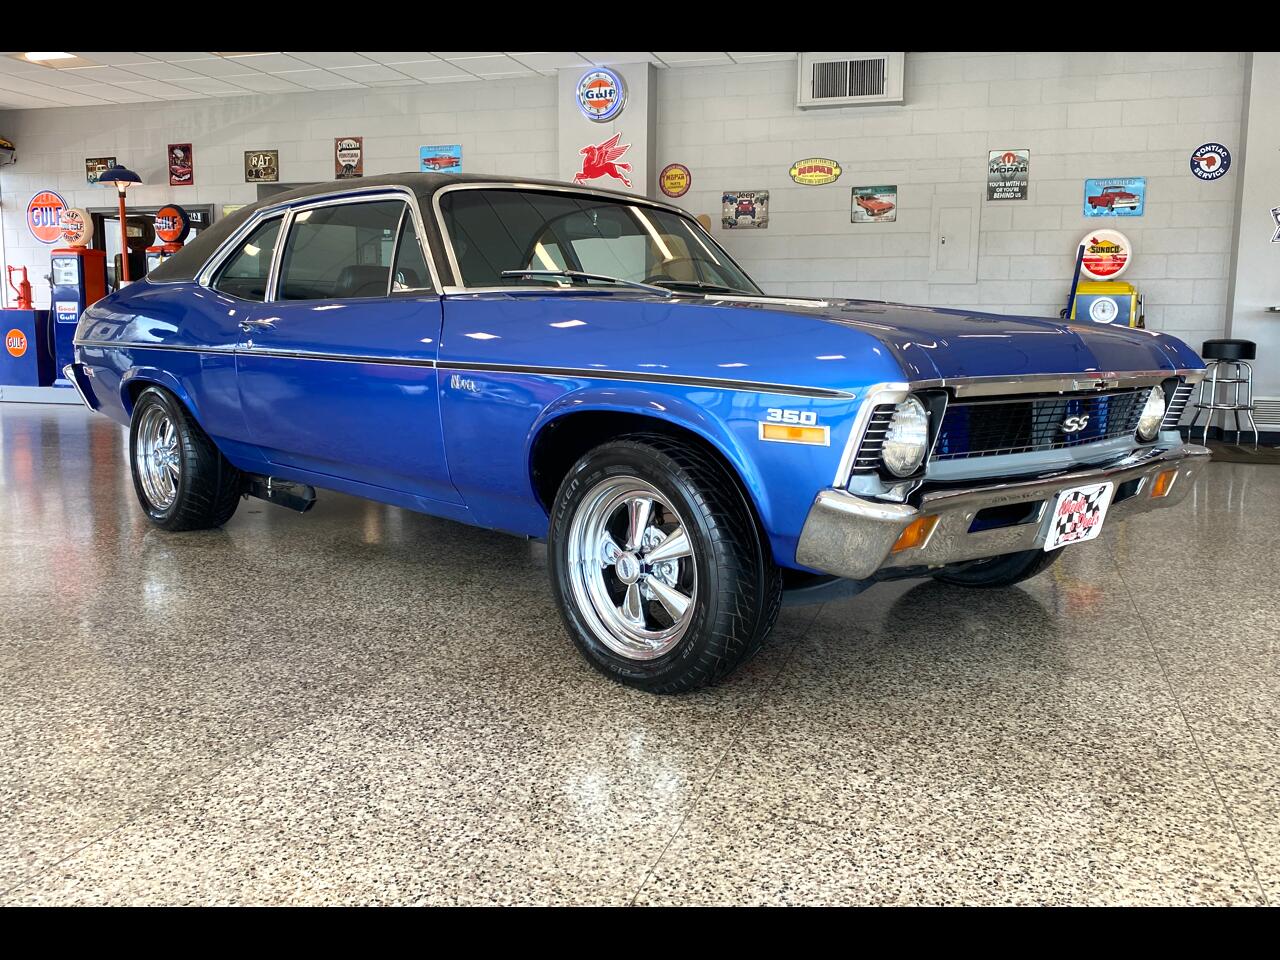 1972 Chevrolet Nova 